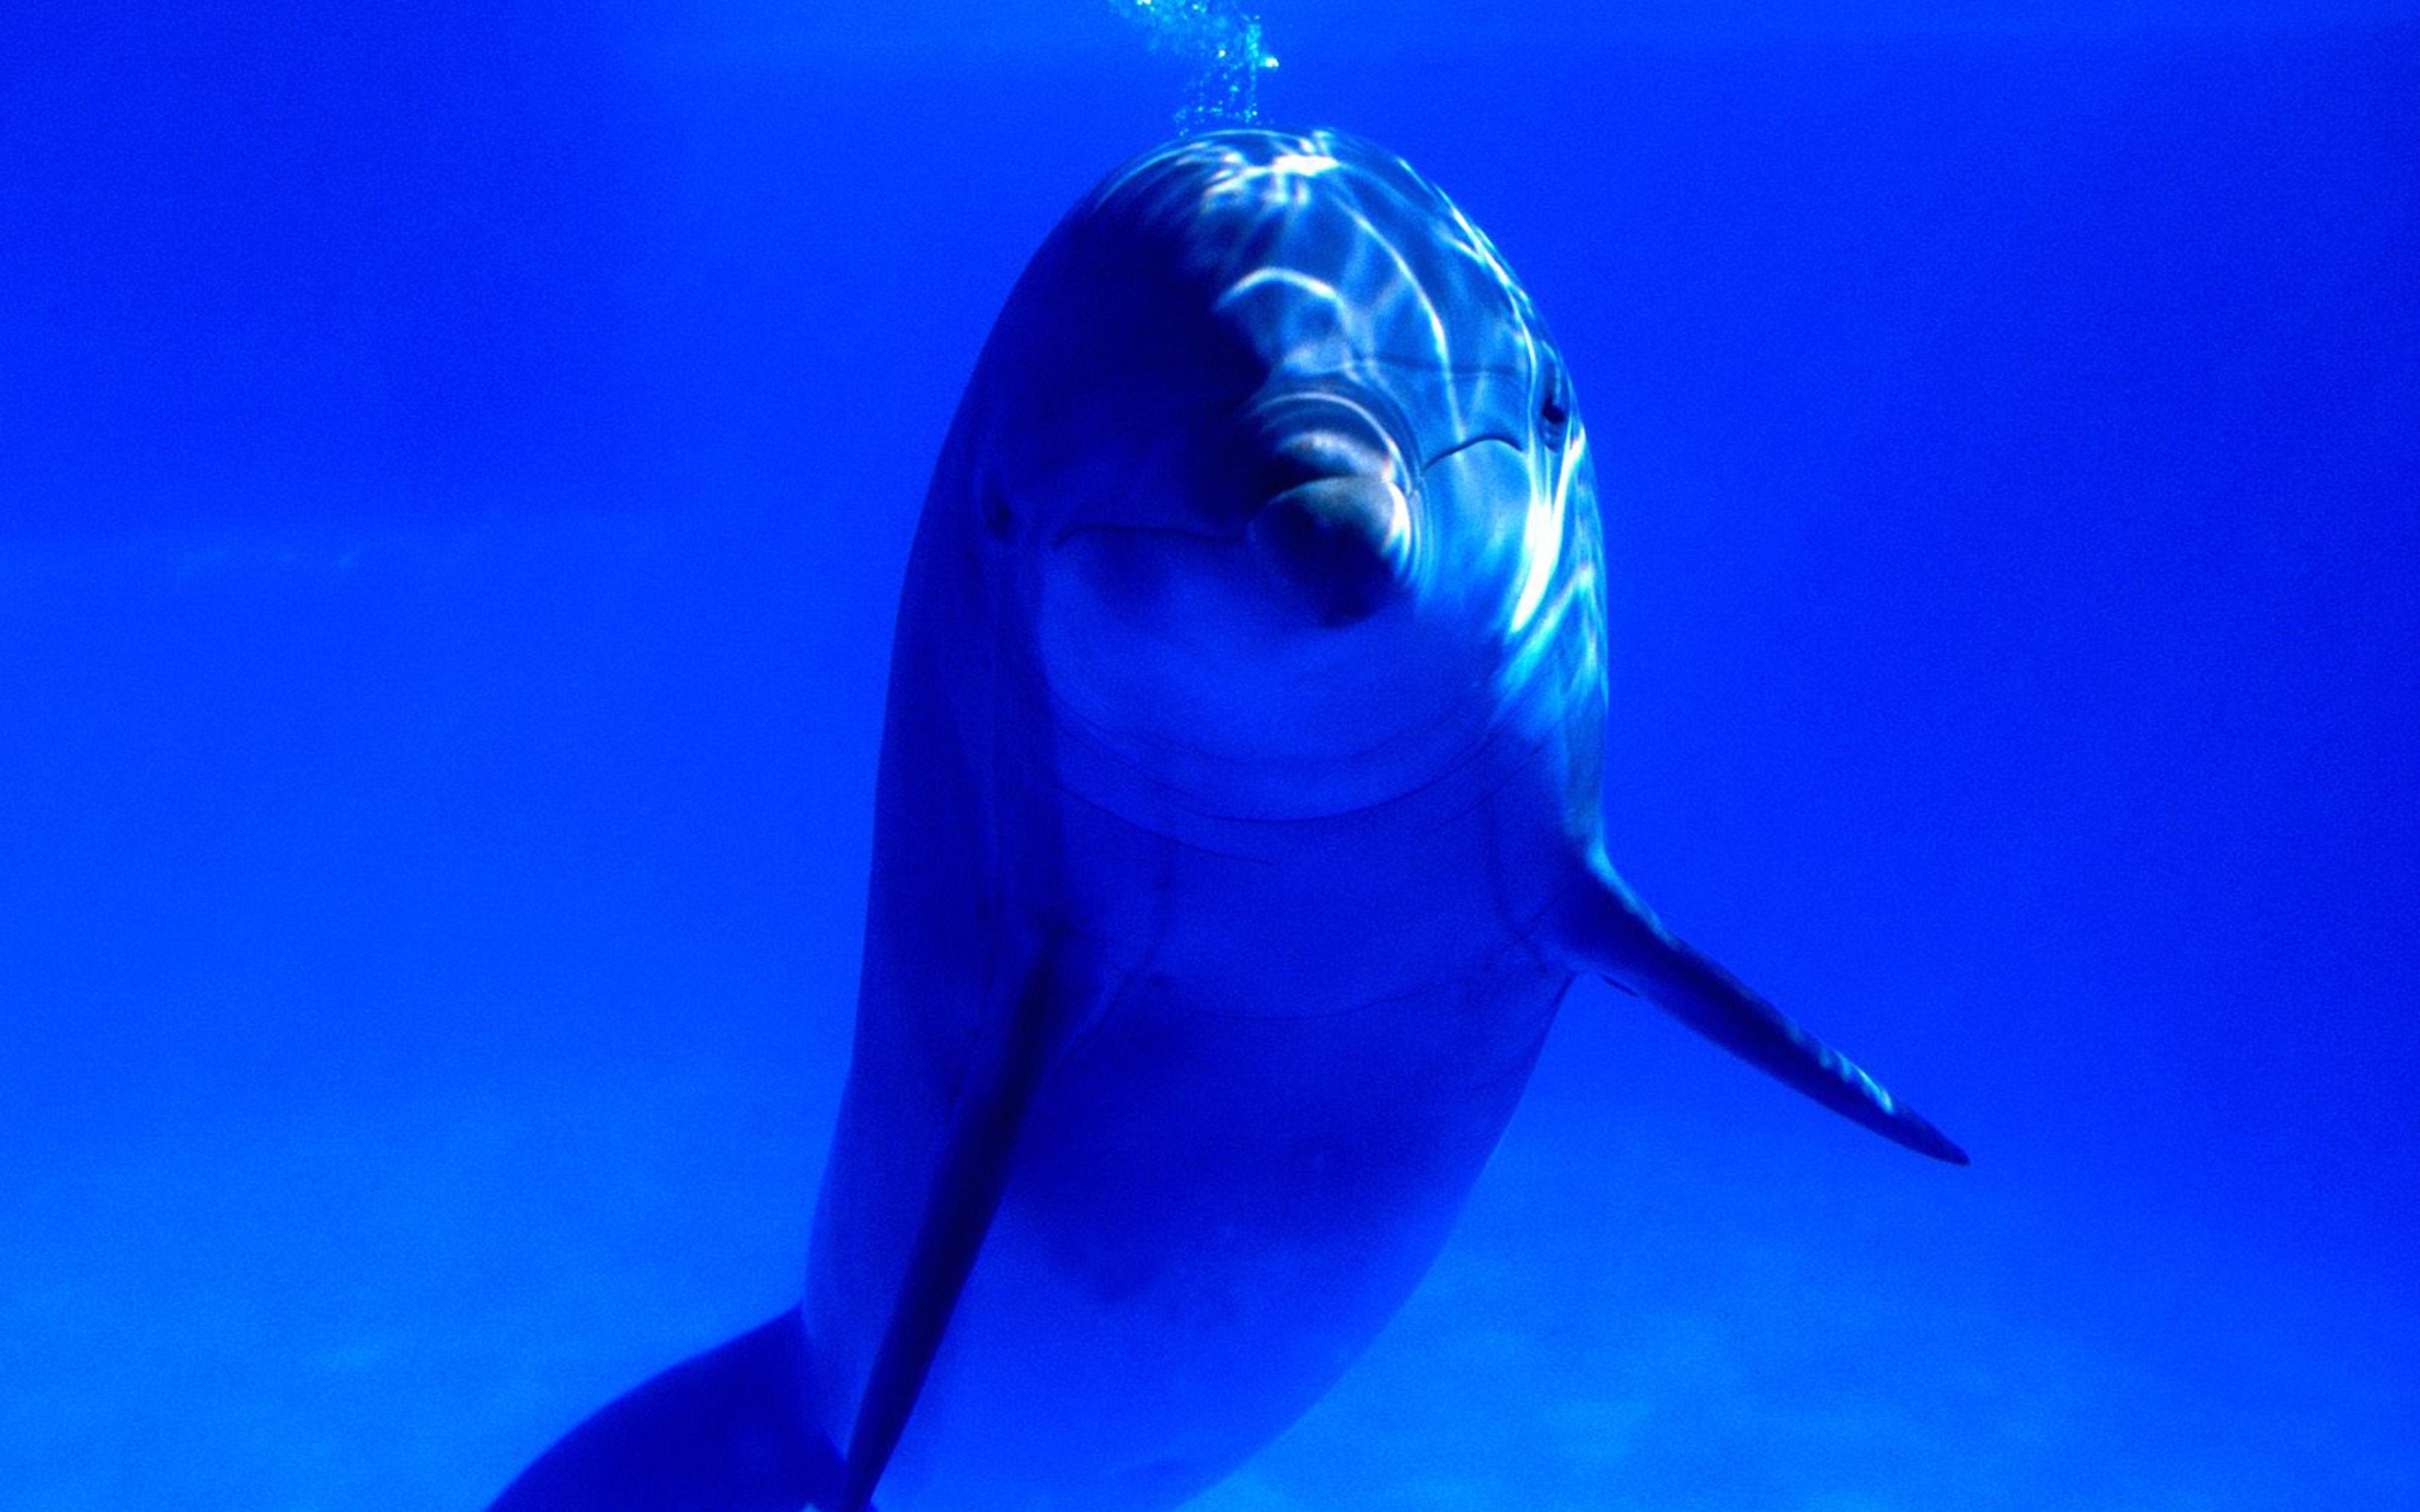 23703 Salvapantallas y fondos de pantalla Delfines en tu teléfono. Descarga imágenes de animales, delfines, mar, azul gratis